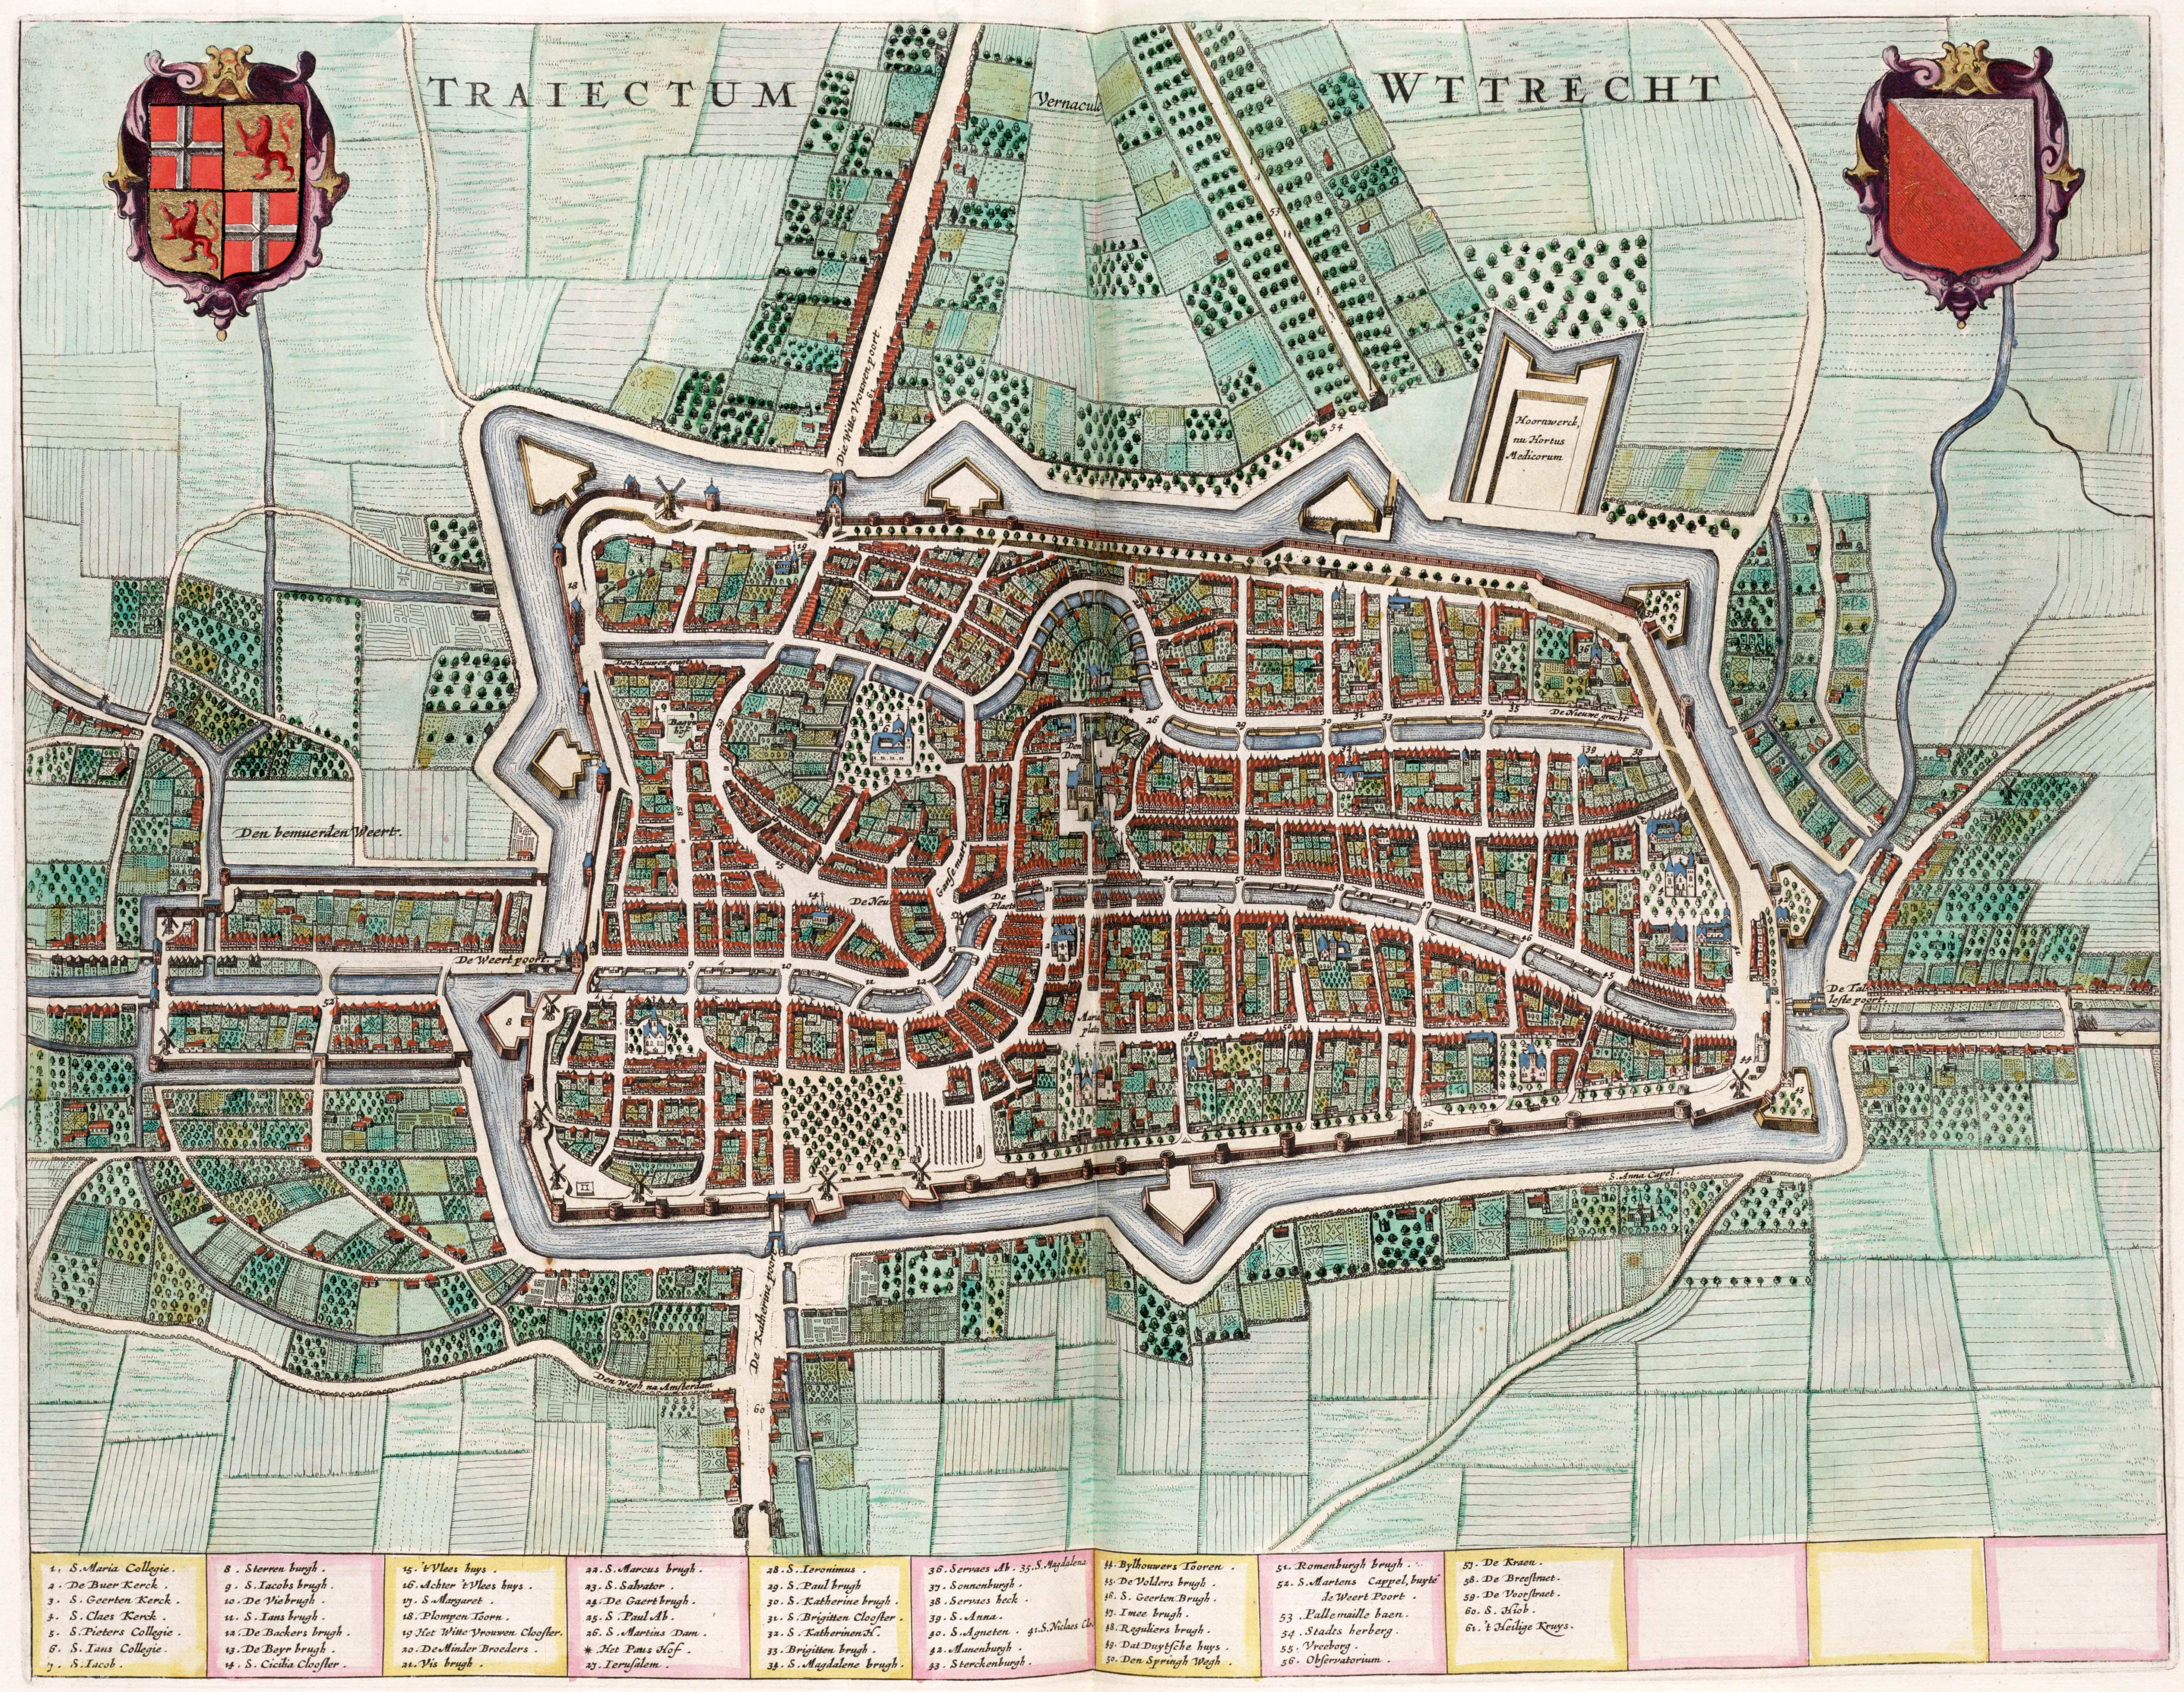 1652 Map of Utrecht, Netherlands image - Free stock photo - Public